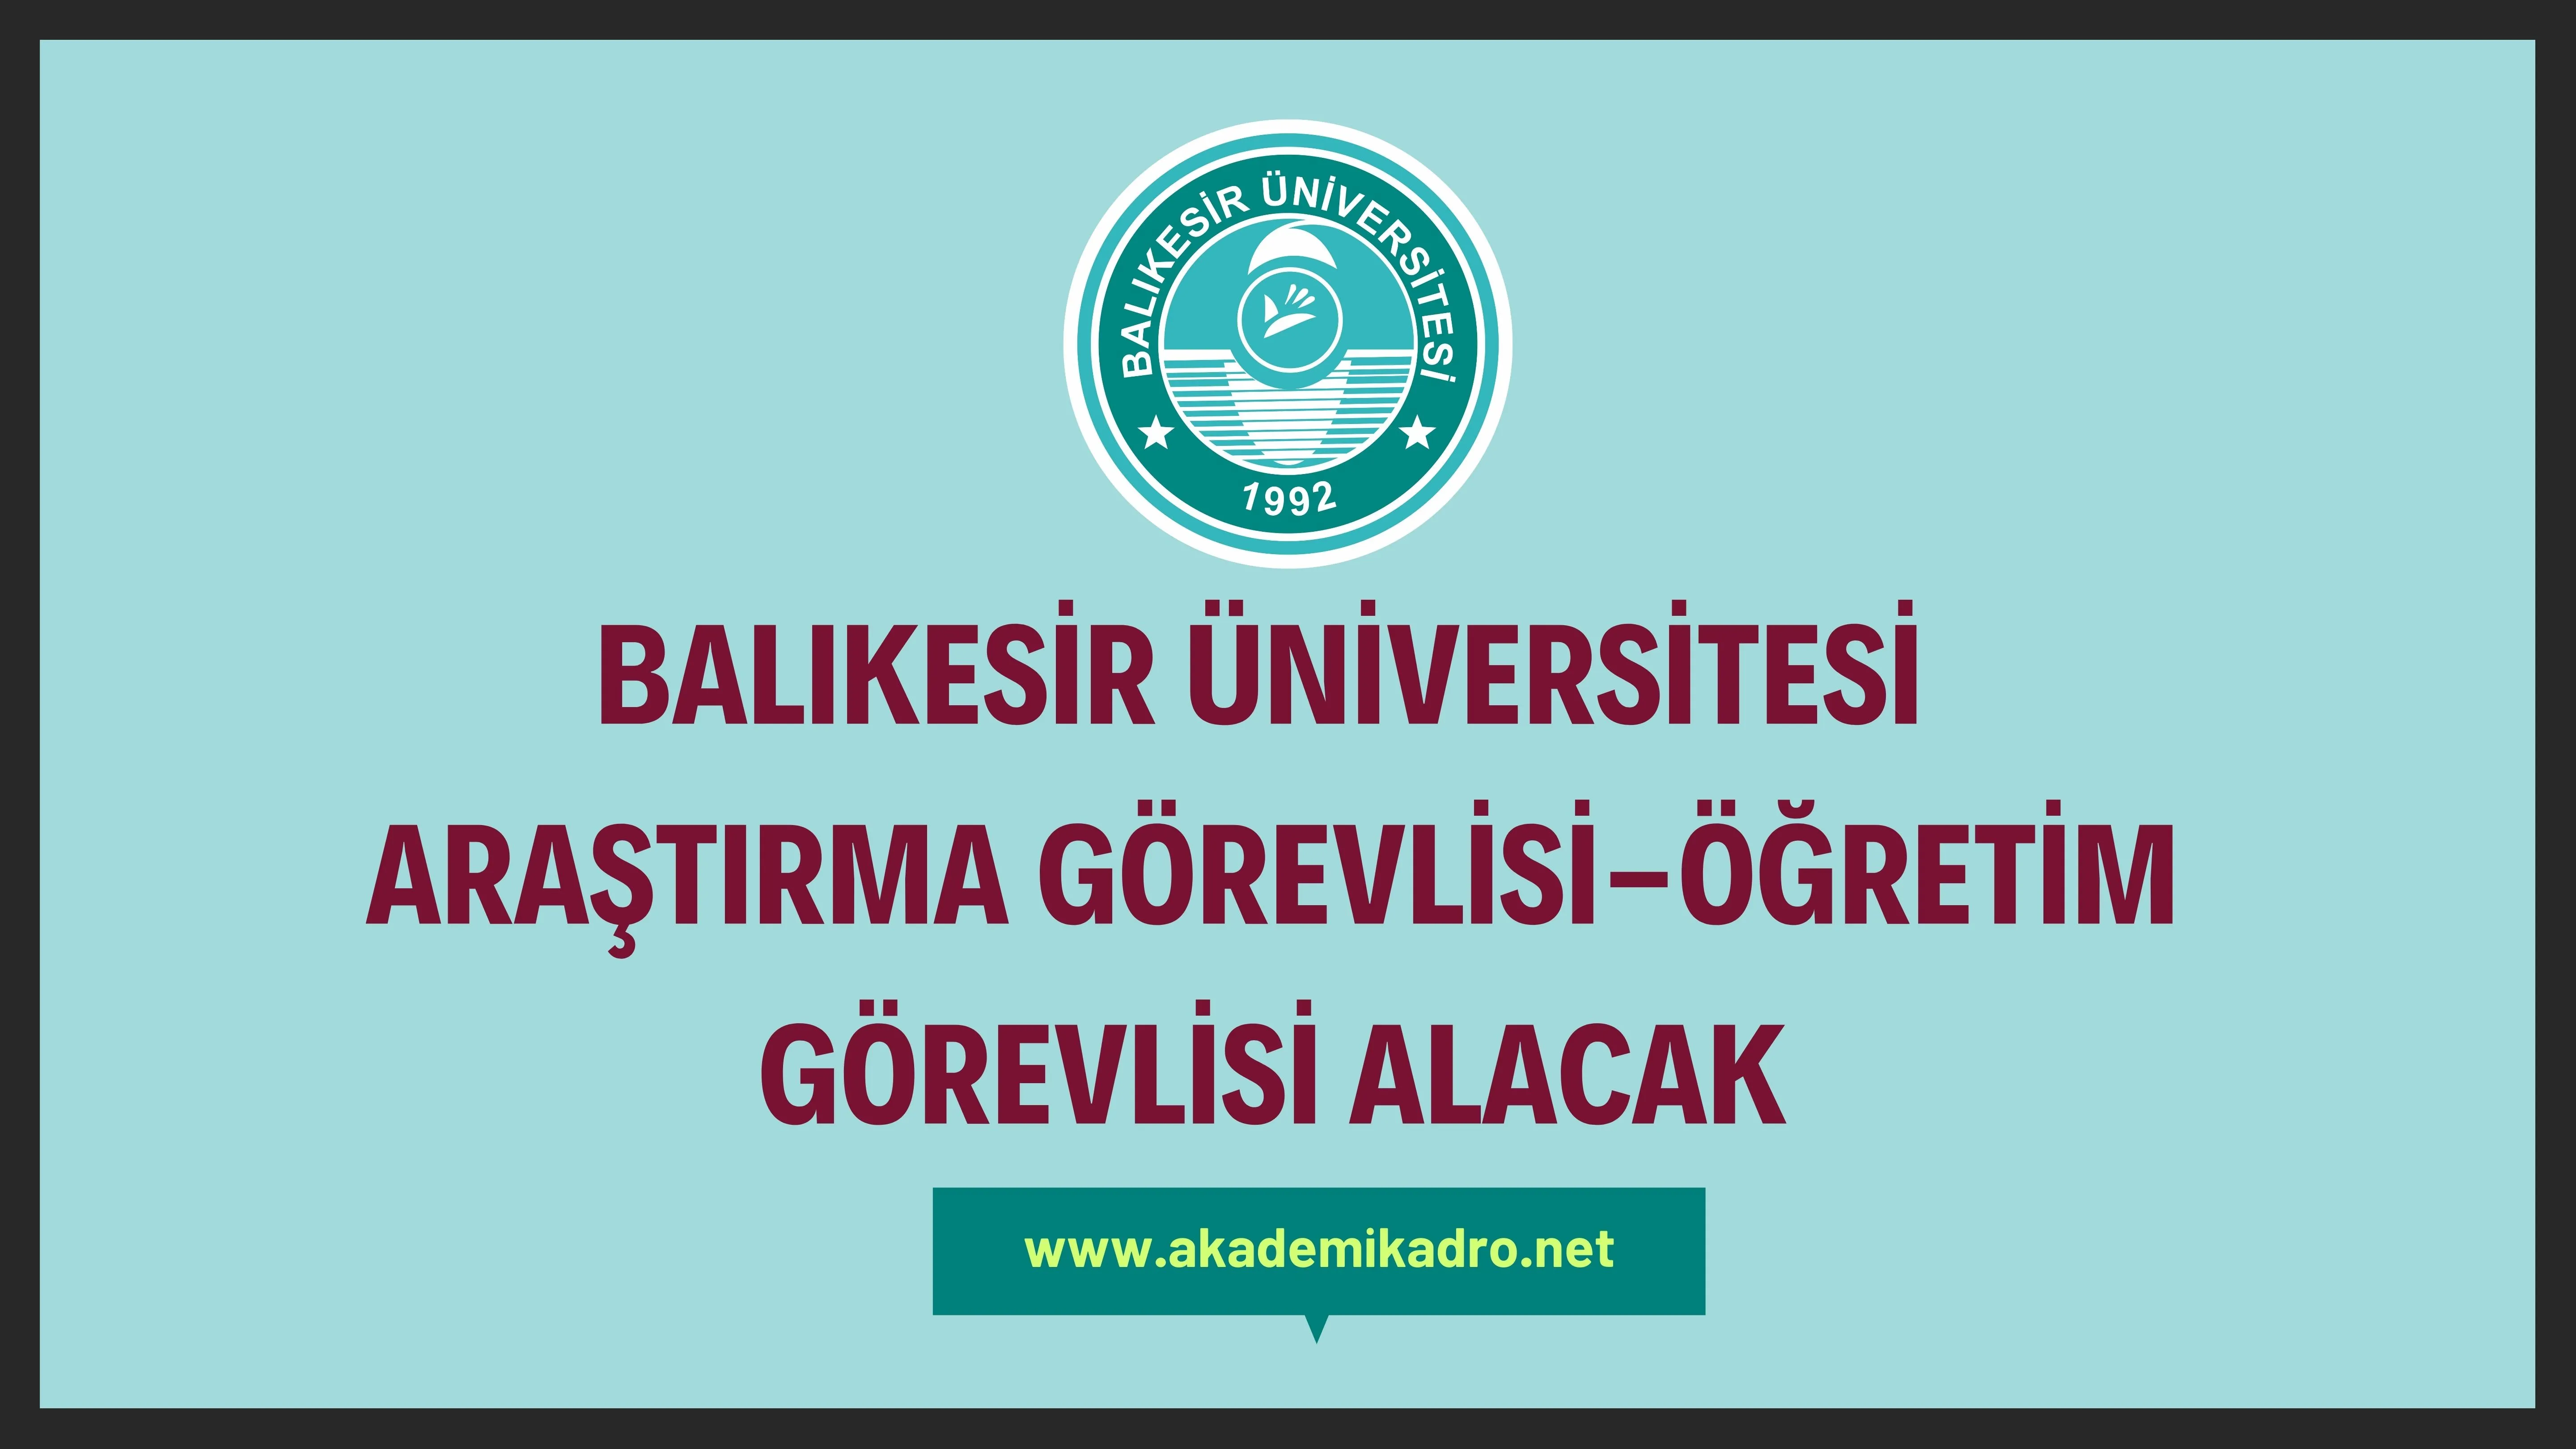 Balıkesir Üniversitesi 3 Öğretim Görevlisi ve 2 Araştırma görevlisi alacaktır. Son başvuru tarihi 17 Kasım 2022